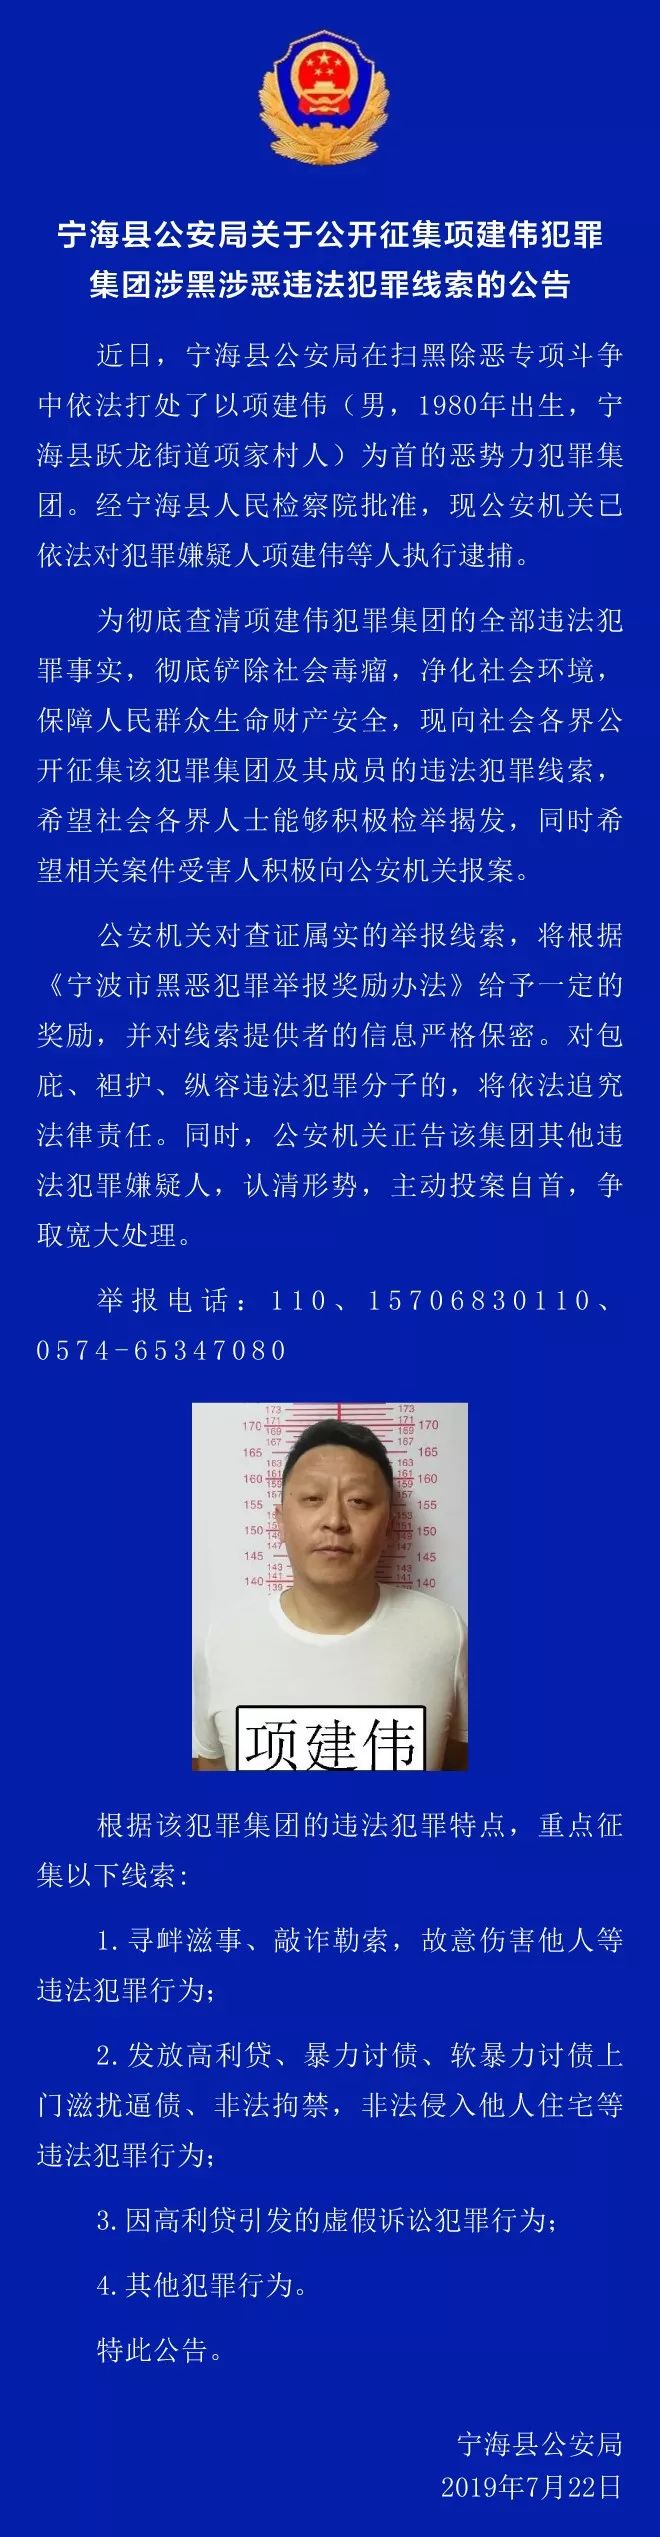 宁海县公安局关于公开征集项建伟犯罪集团涉黑涉恶违法犯罪线索的公告